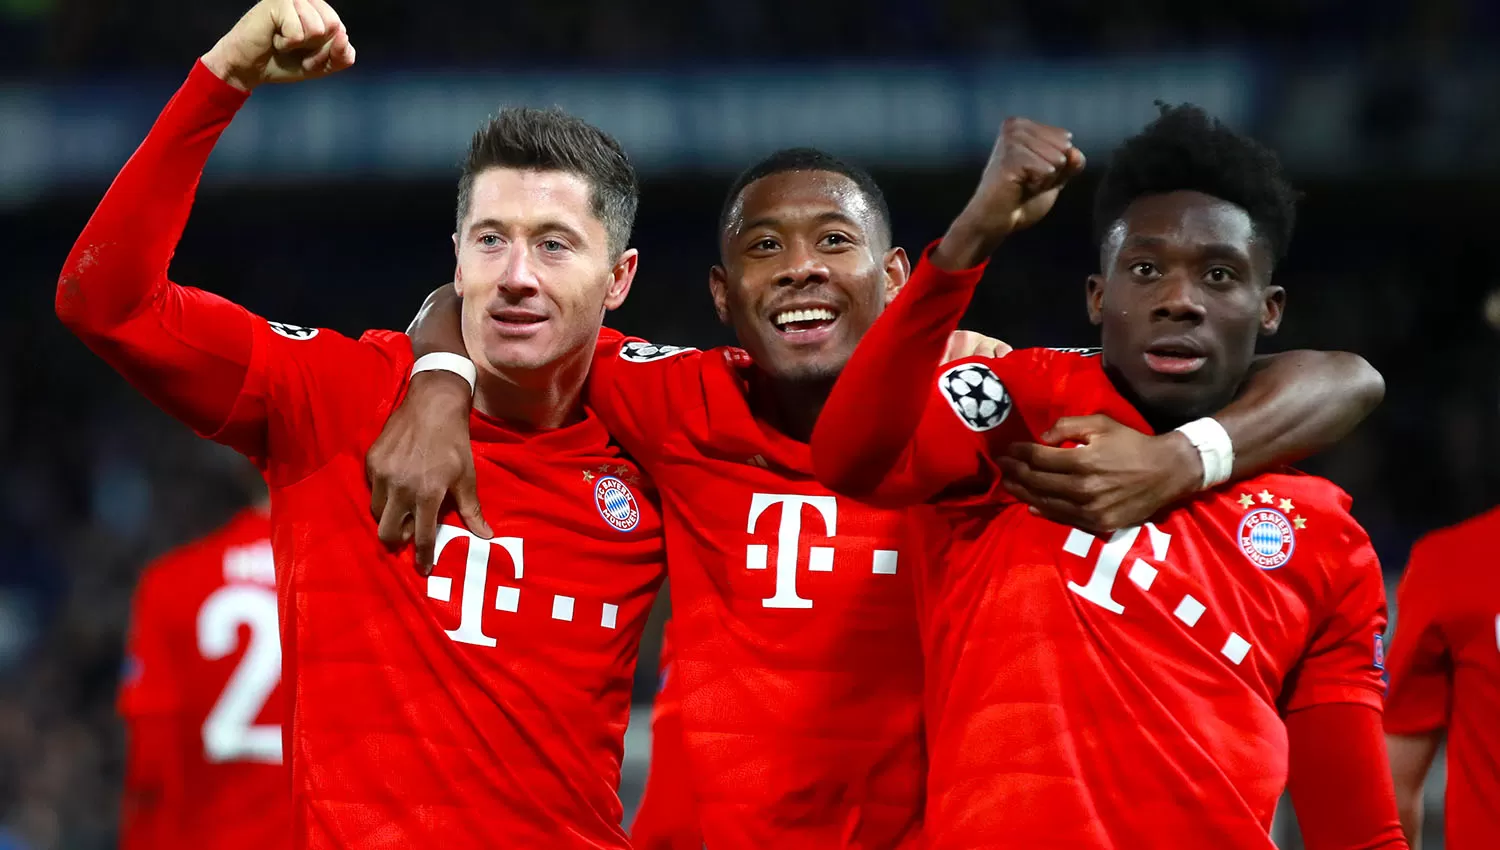 El Bayern dio un recital de fútbol ante los Blues y parece tener resuelta la eliminatoria. (REUTERS)